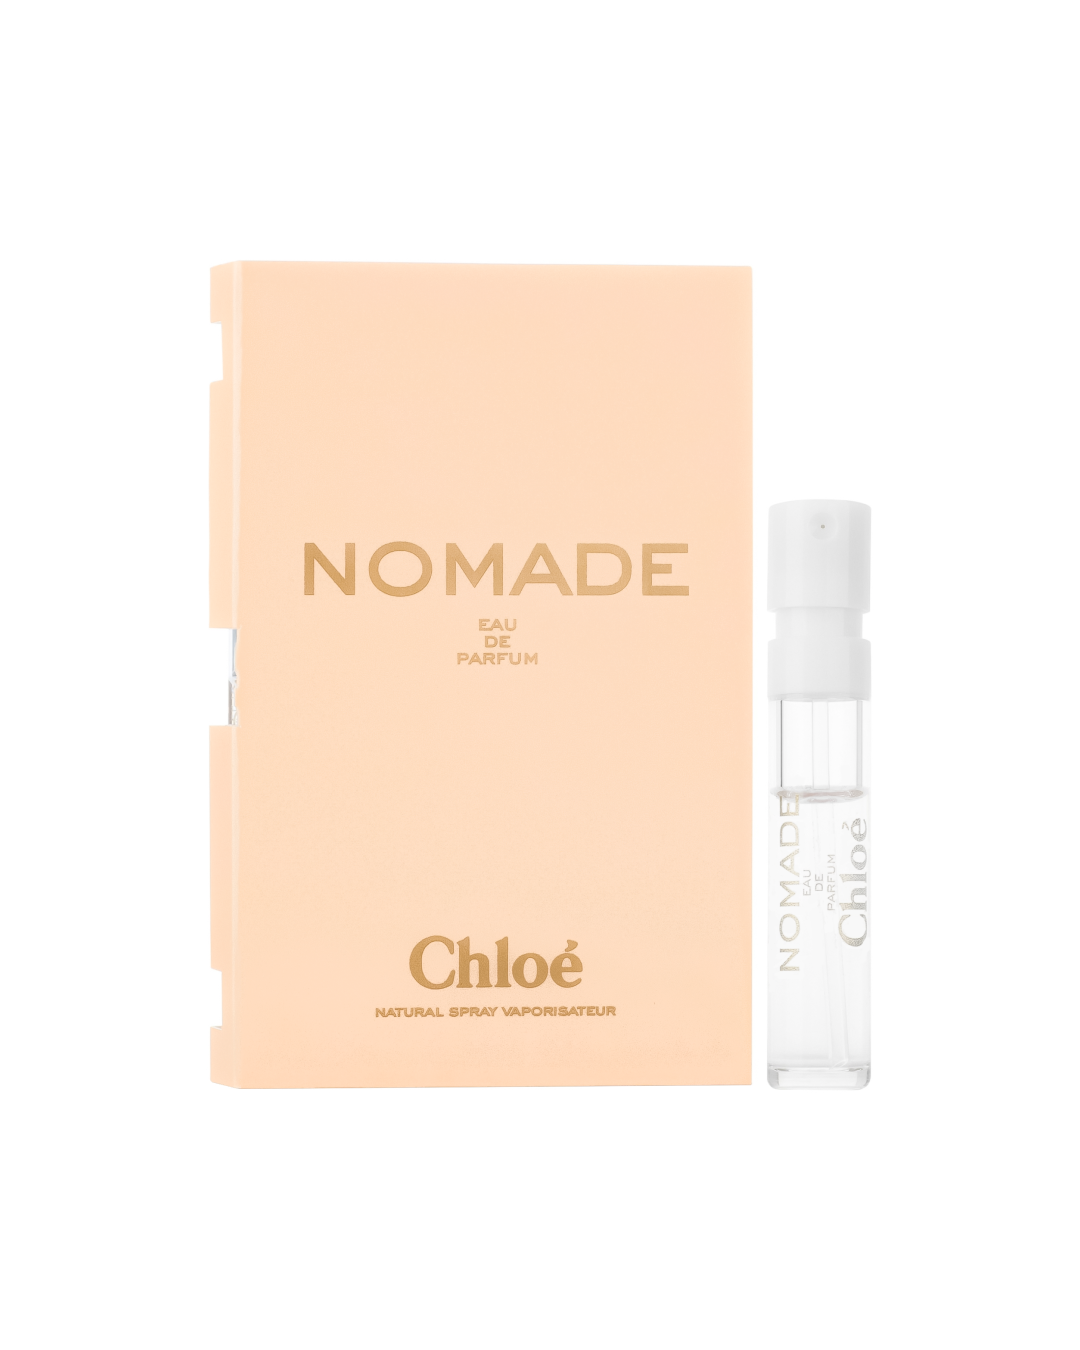 Chloe Nomade EDP Travel Vial (1.2ml) - Best Buy World Philippines